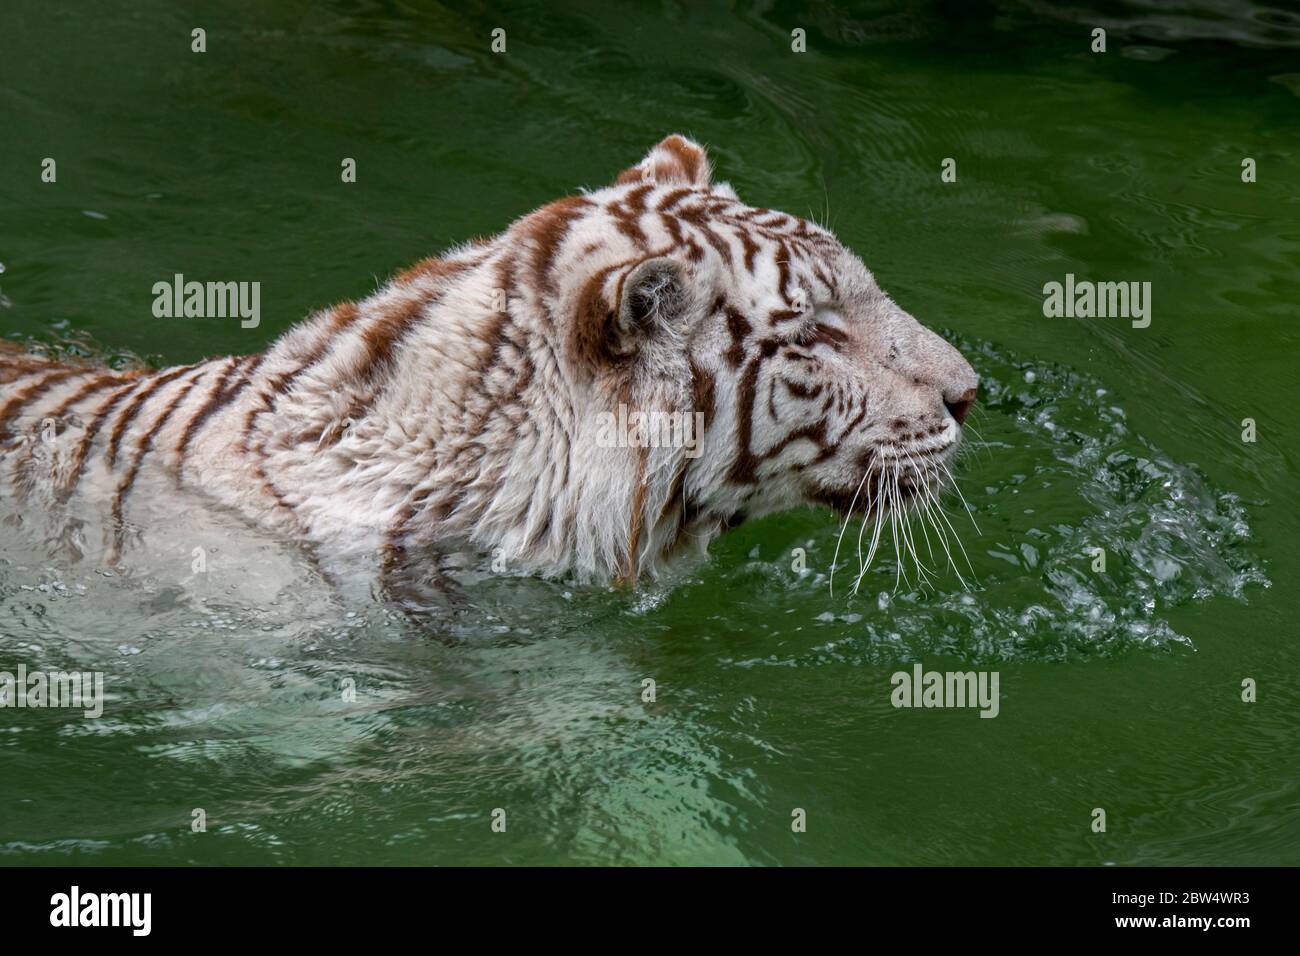 Weißer Tiger / gebleichter Tiger (Panthera tigris) Pigmentvariante des bengalischen Tigers, der sich im Wasser des Teiches abkühlt, heimisch in Indien Stockfoto